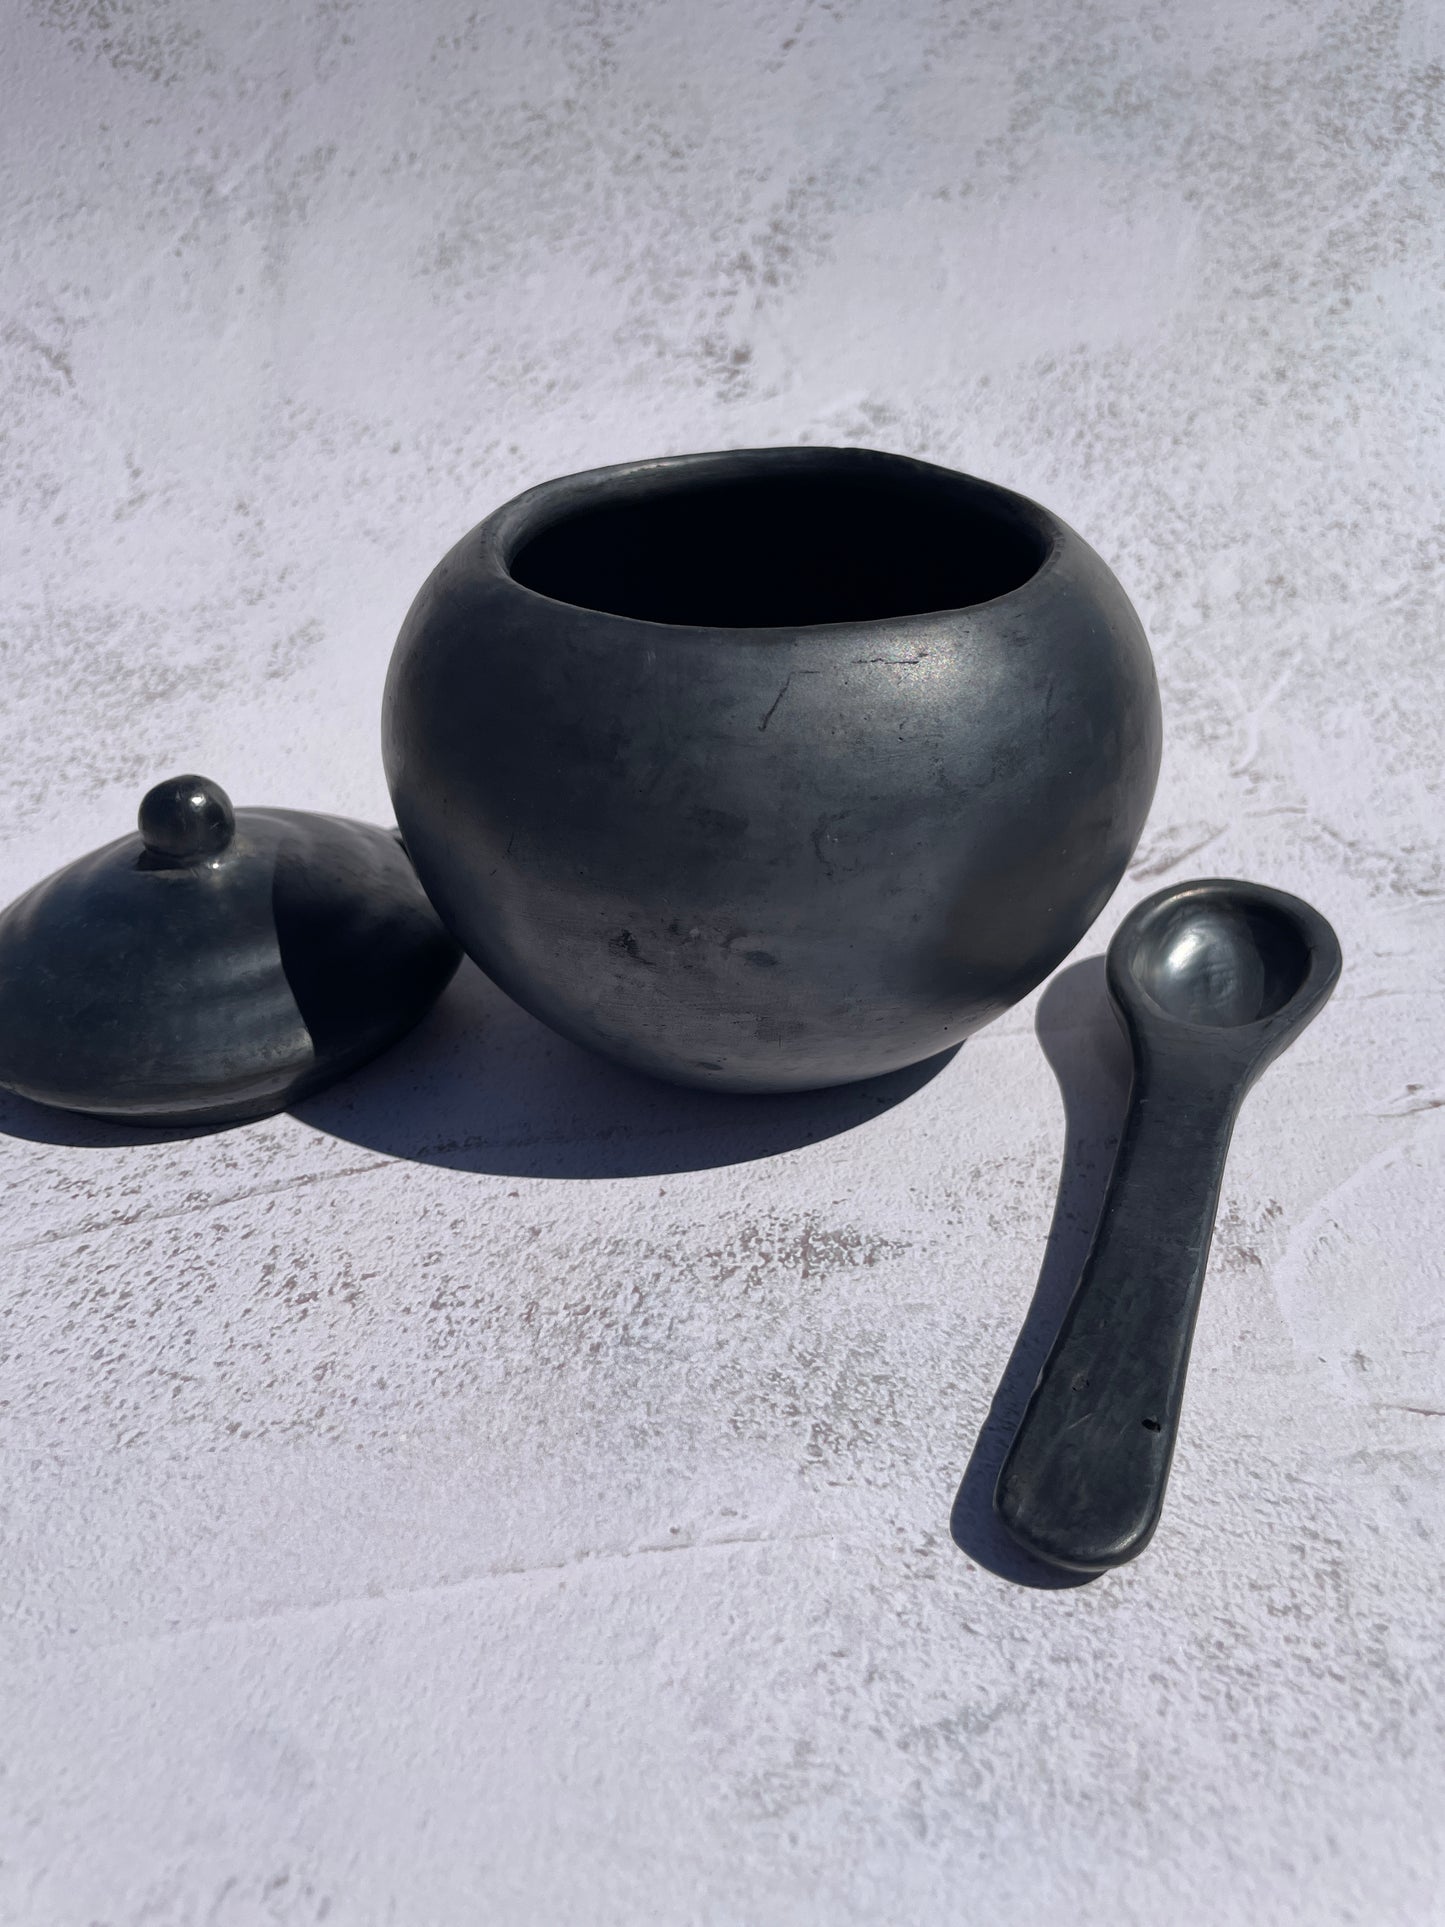 Oaxaca Black Pottery Round Sugar Bowl With Spoon Azucarera Barro Negro Azucarera con Cuchara